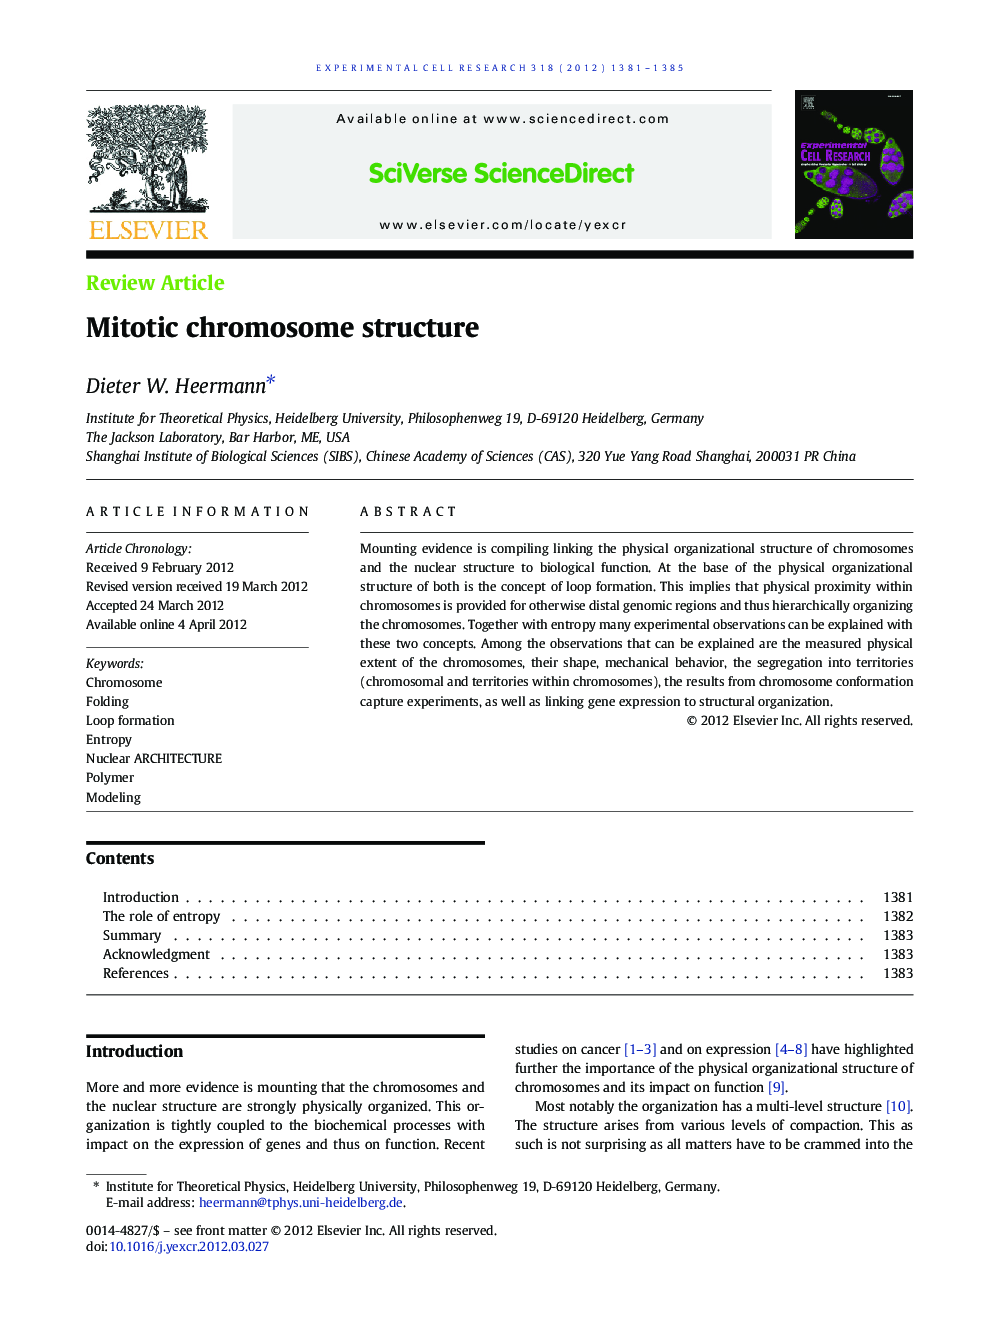 Mitotic chromosome structure